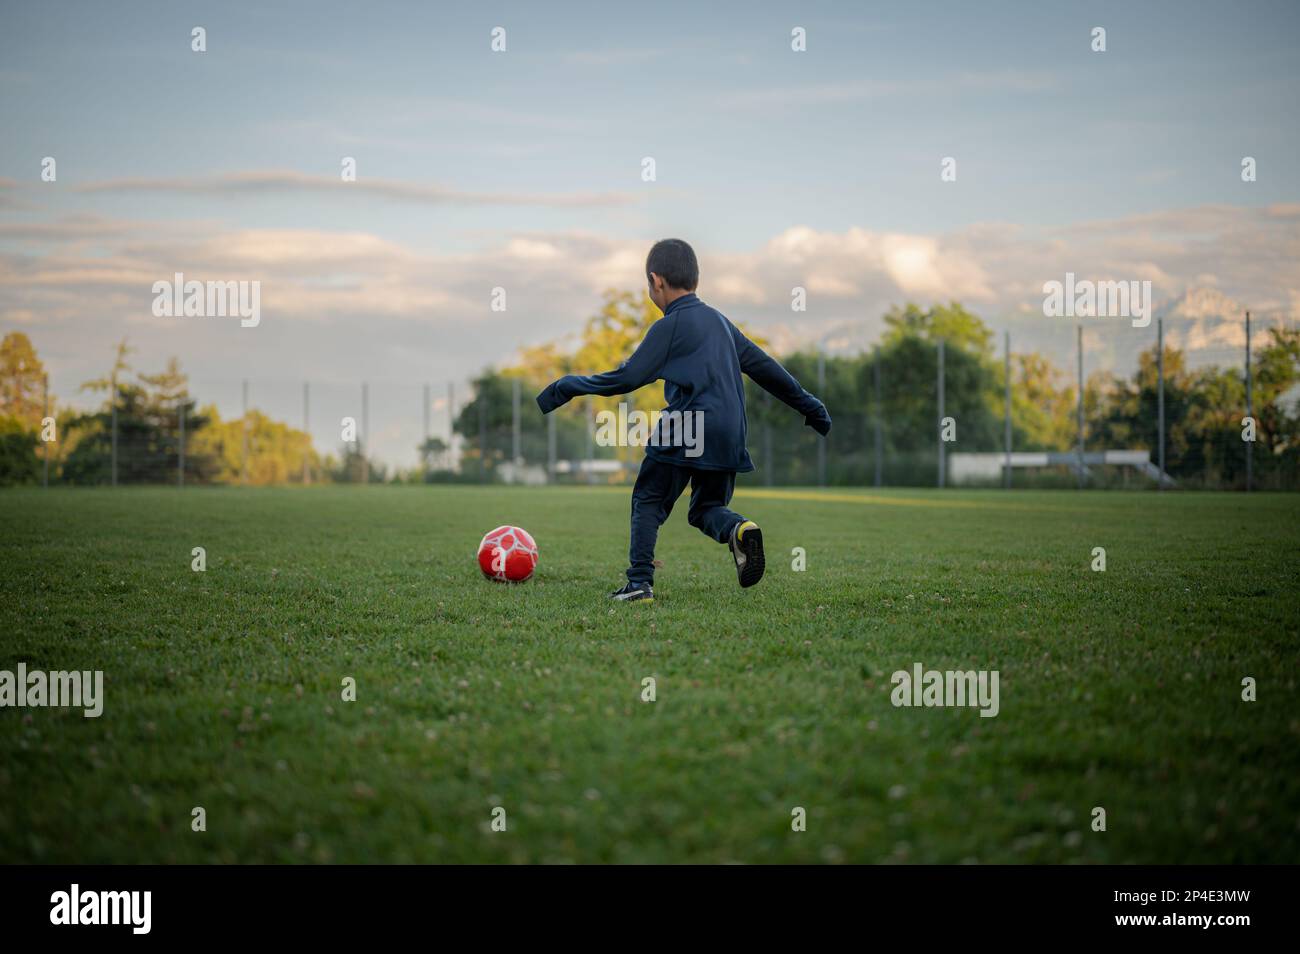 Ein Kind spielt Fußball. Ein asiatischer Junge tritt den roten Fußball. Stockfoto